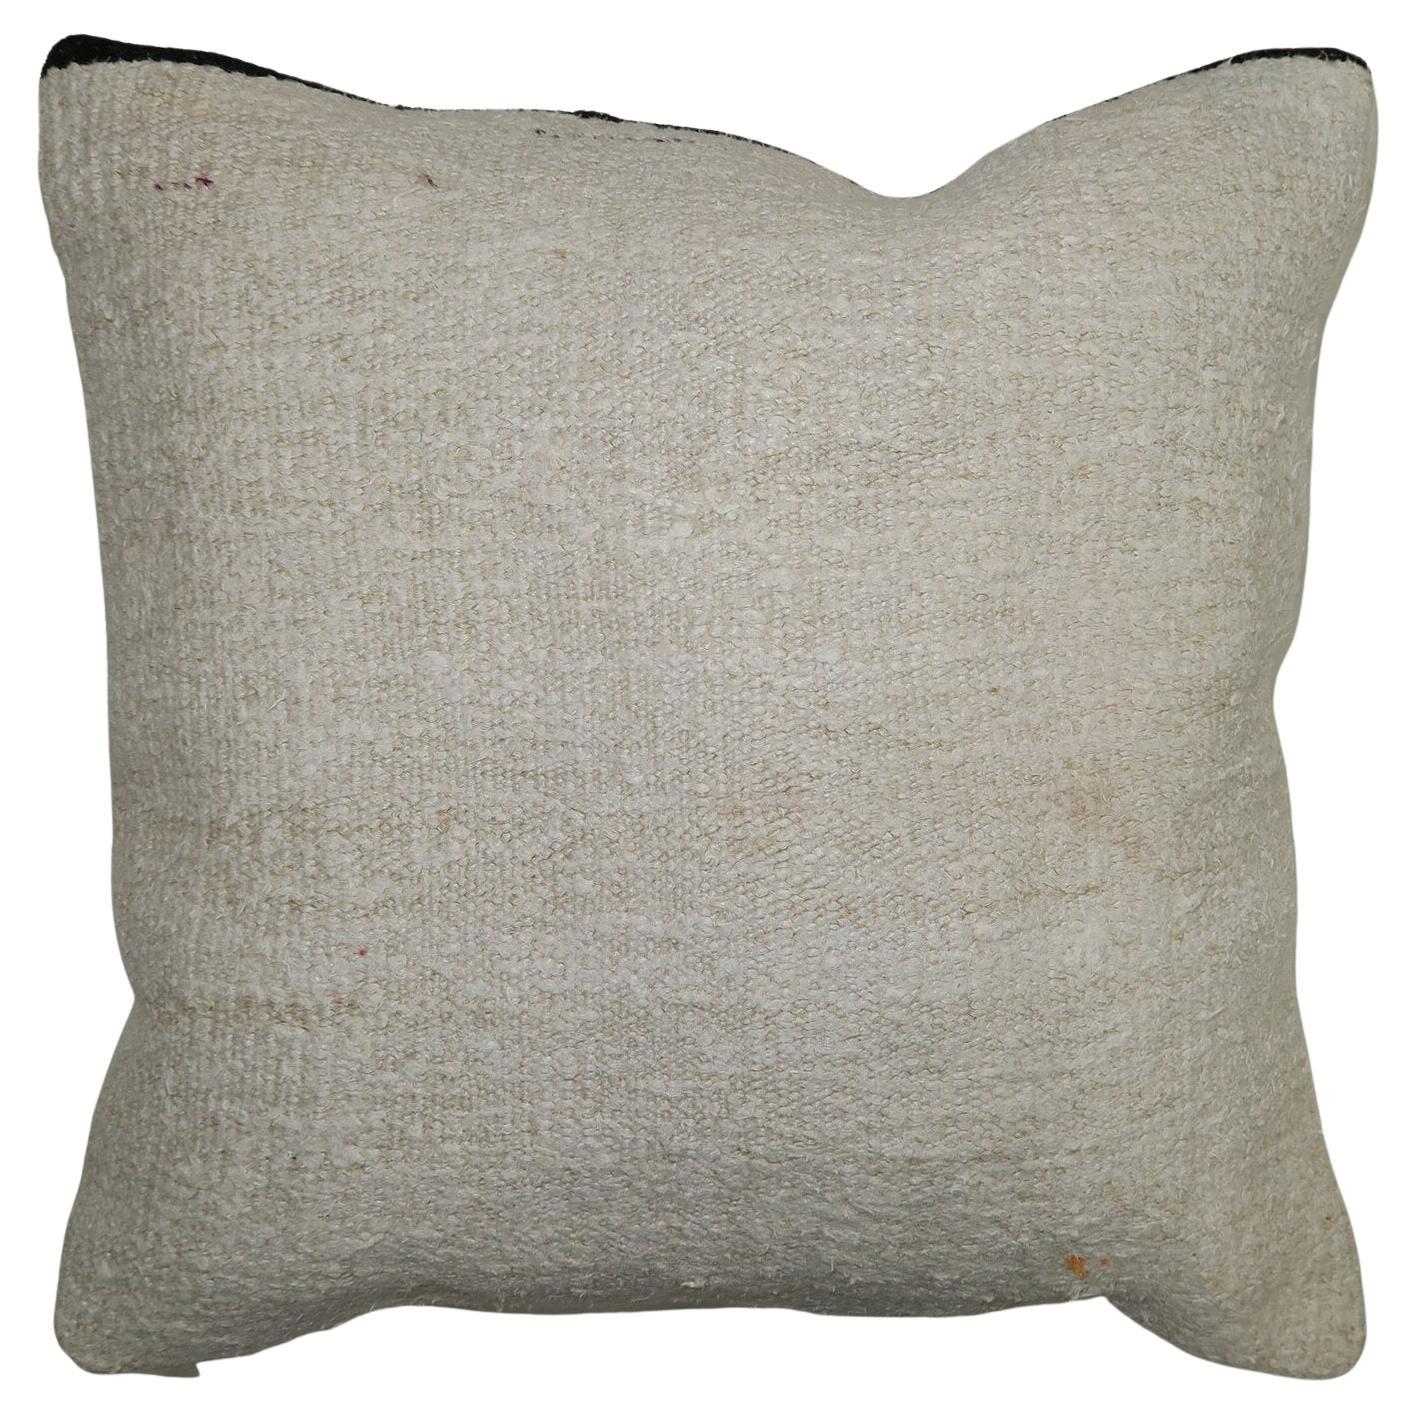 White Kilim Pillow with Black Stripe